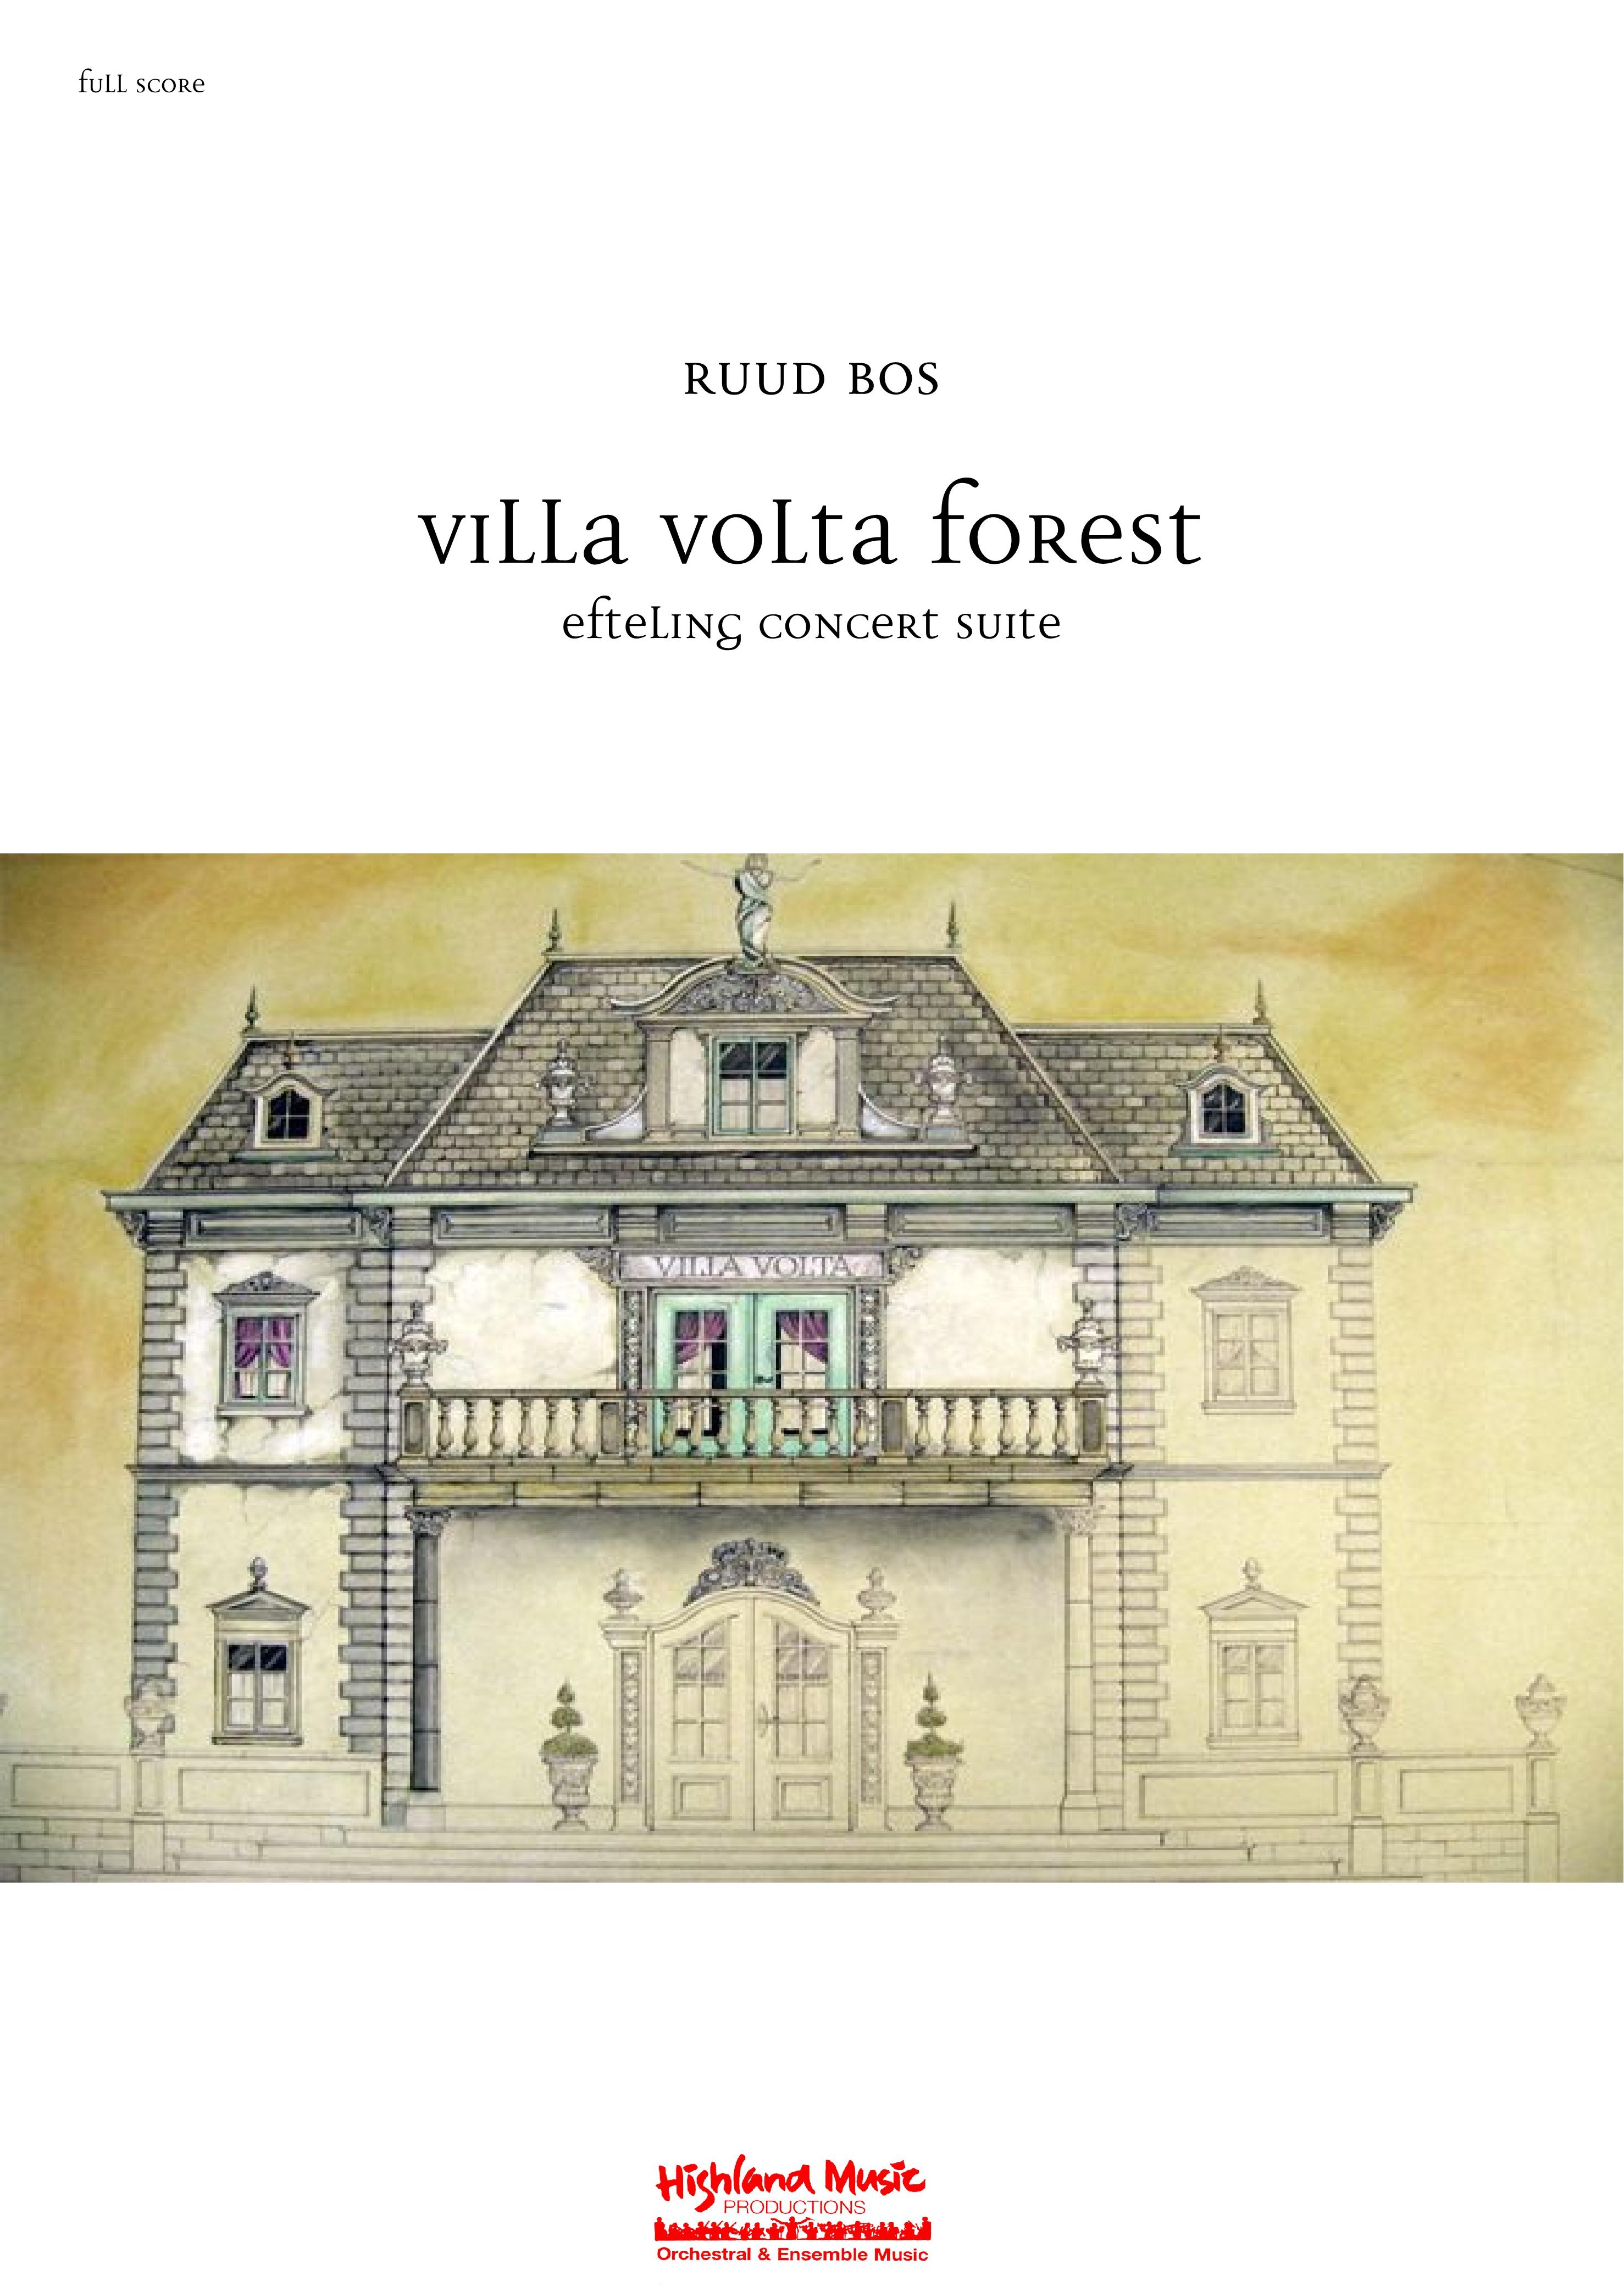 Ruud Bos - Villa Volta, Efteling Suite